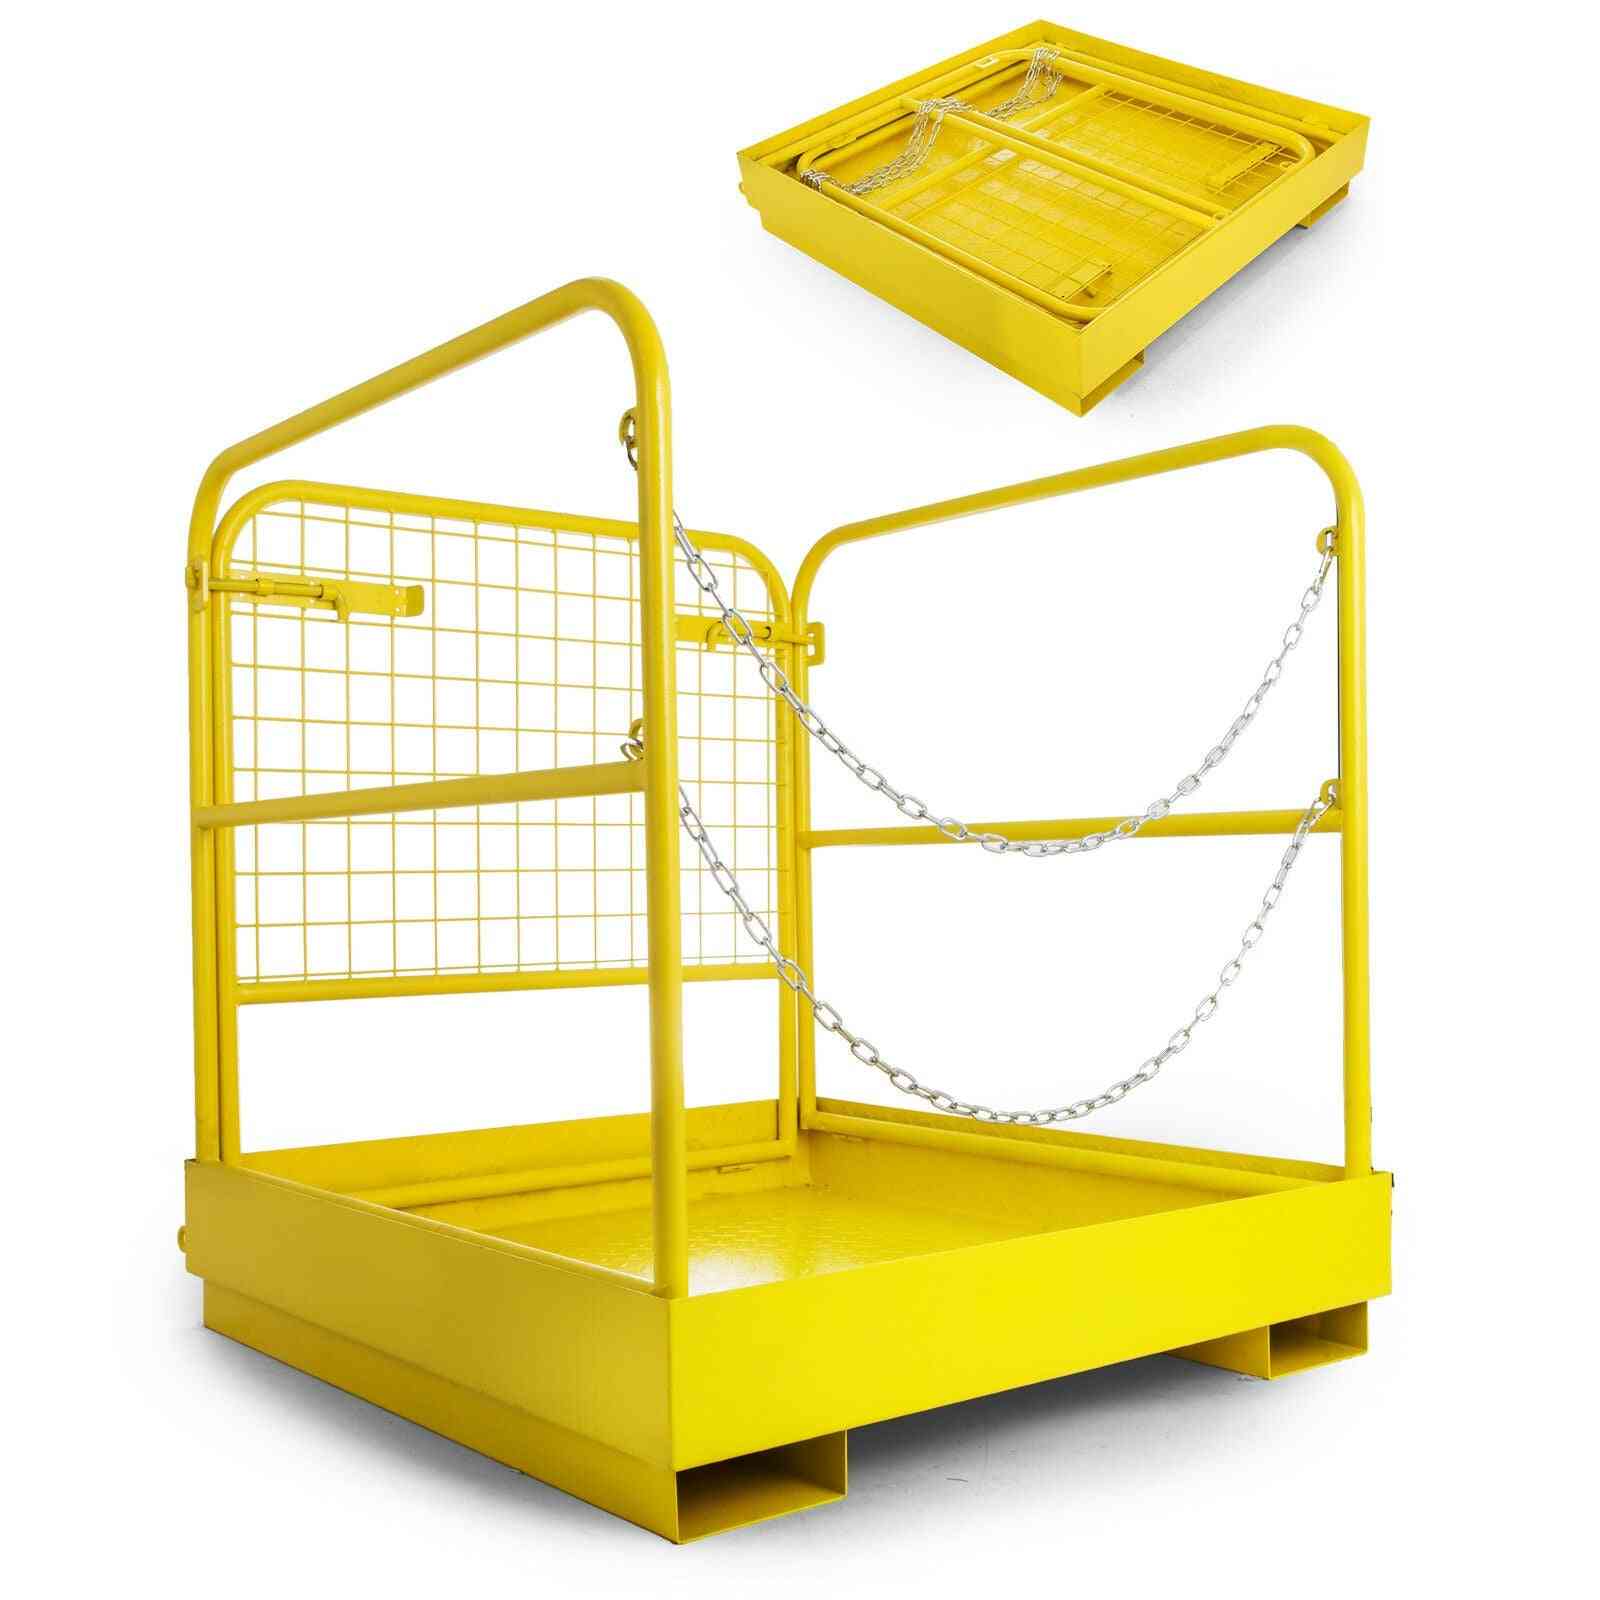 Cage 2-person, Work Platform, Hanging Basket, Aerial Fence Rails